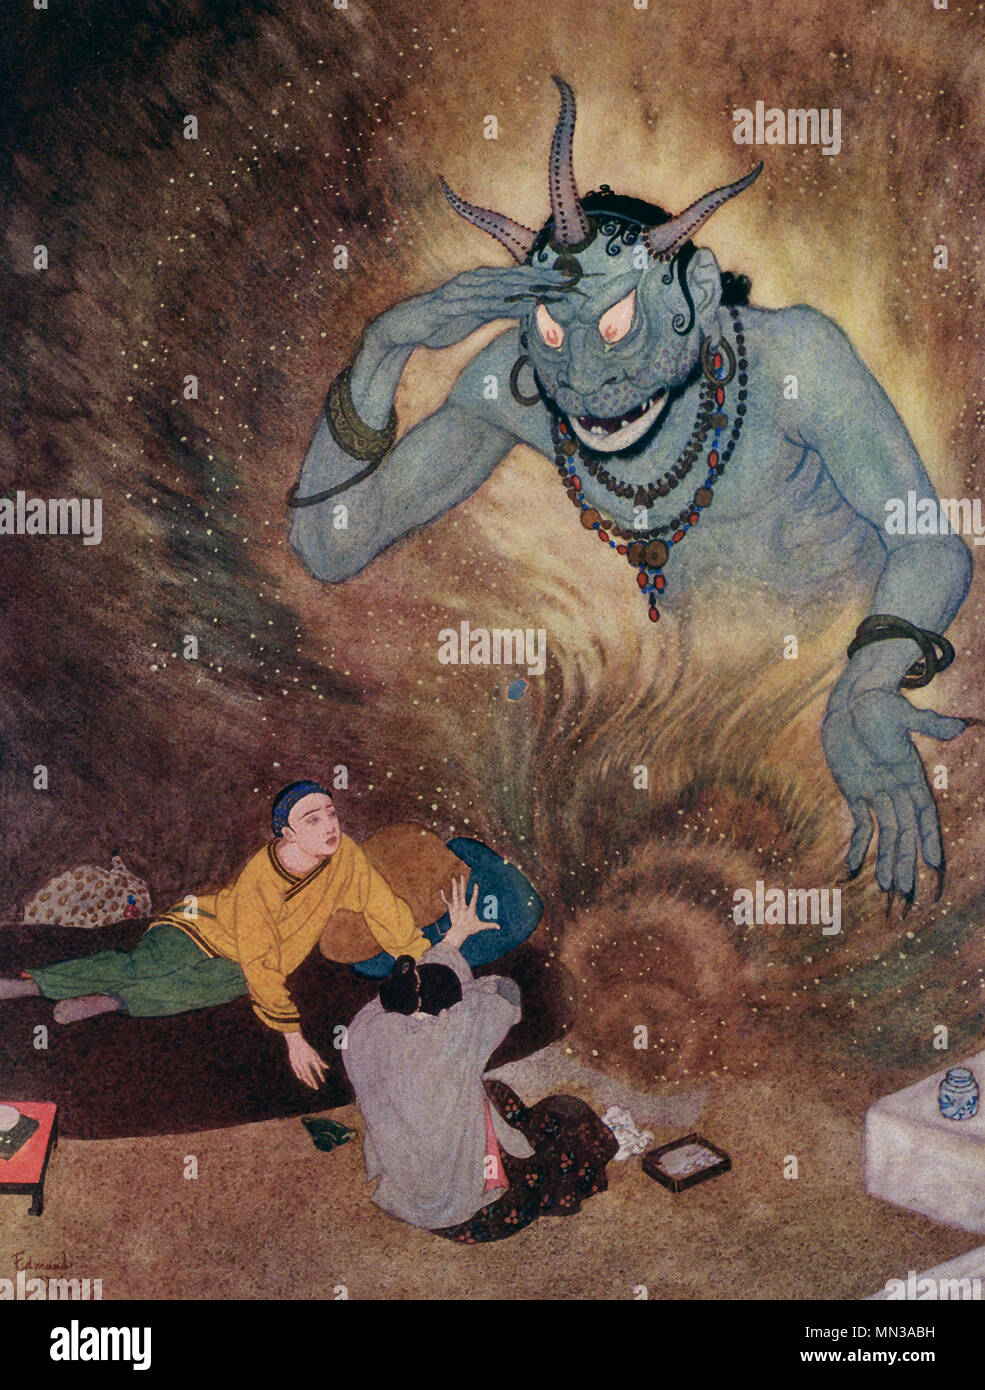 Diese frühen 1900s Abbildung zeigt Aladdin und die Efrite. Die Geschichte ist eine märchens und entstand wahrscheinlich in den Nahen Osten. Seine Geschichte ist oft verbunden mit und/oder in den Tausend und Einer Nacht, oder den arabischen Nächte inklusive. Es ist nicht einer der ursprünglichen Geschichten aber man inklusive der Franzose Antoine Galland. Aladdin ist ein armer Mann in China, die von einem Zauberer namens Mustapha, eingestellt wird. Mustapha will Aladdin ein magisches öl Lampe aus einer Höhle abzurufen, wie hier zu sehen. Aladdin hat und innerhalb ist ein effrite, auch als Genie, der ihm erzählt, dass sein Wunsch sein Befehl ist bekannt. Stockfoto